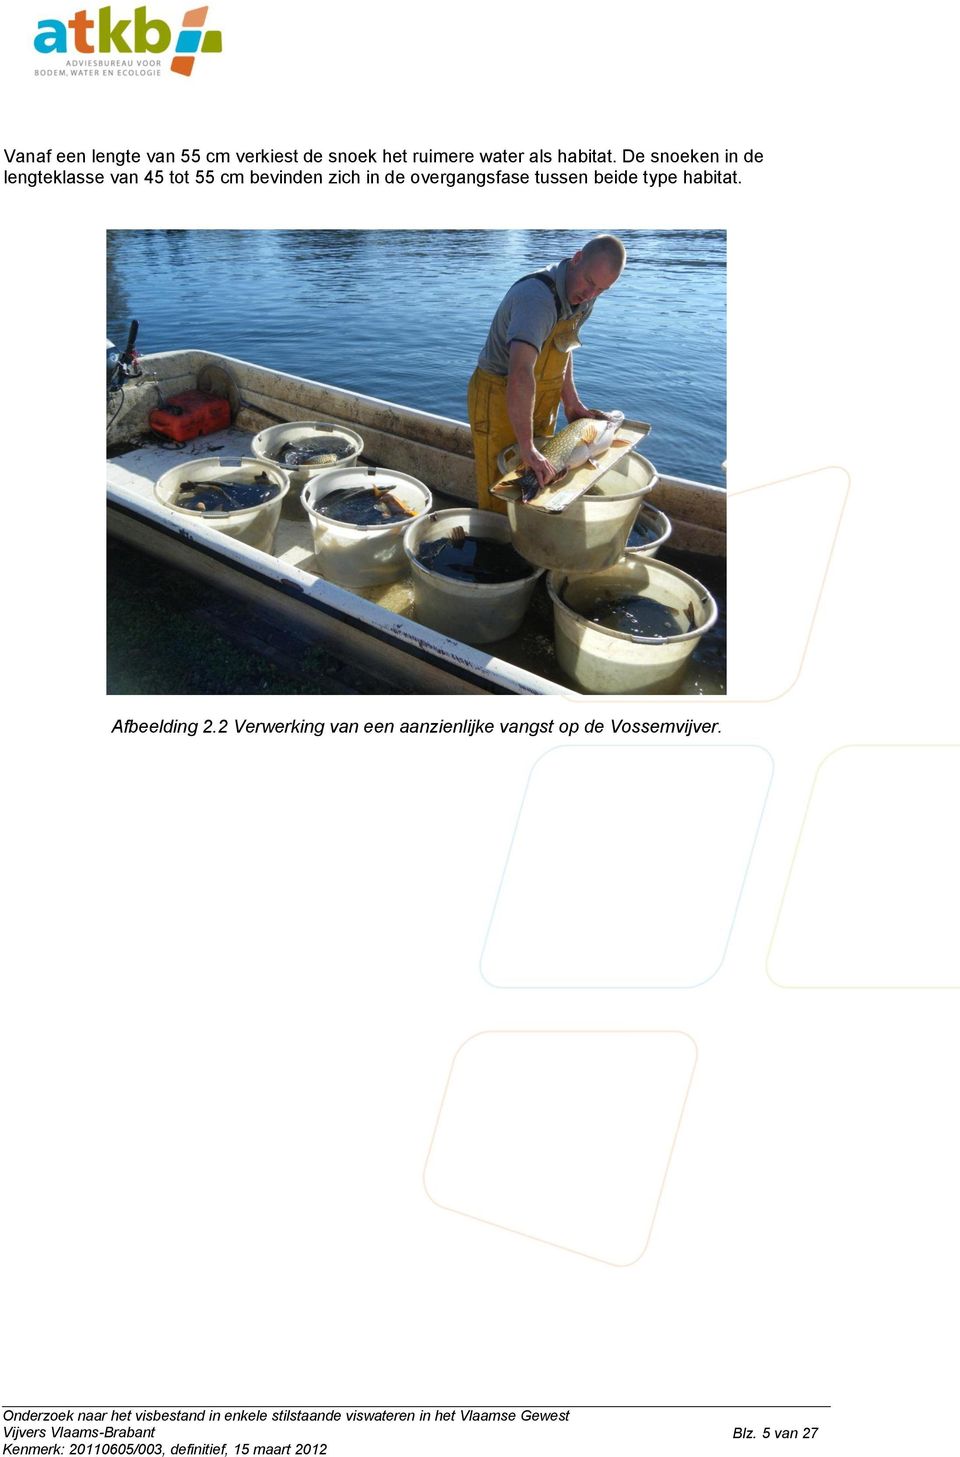 habitat. Afbeelding 2.2 Verwerking van een aanzienlijke vangst op de Vossemvijver.